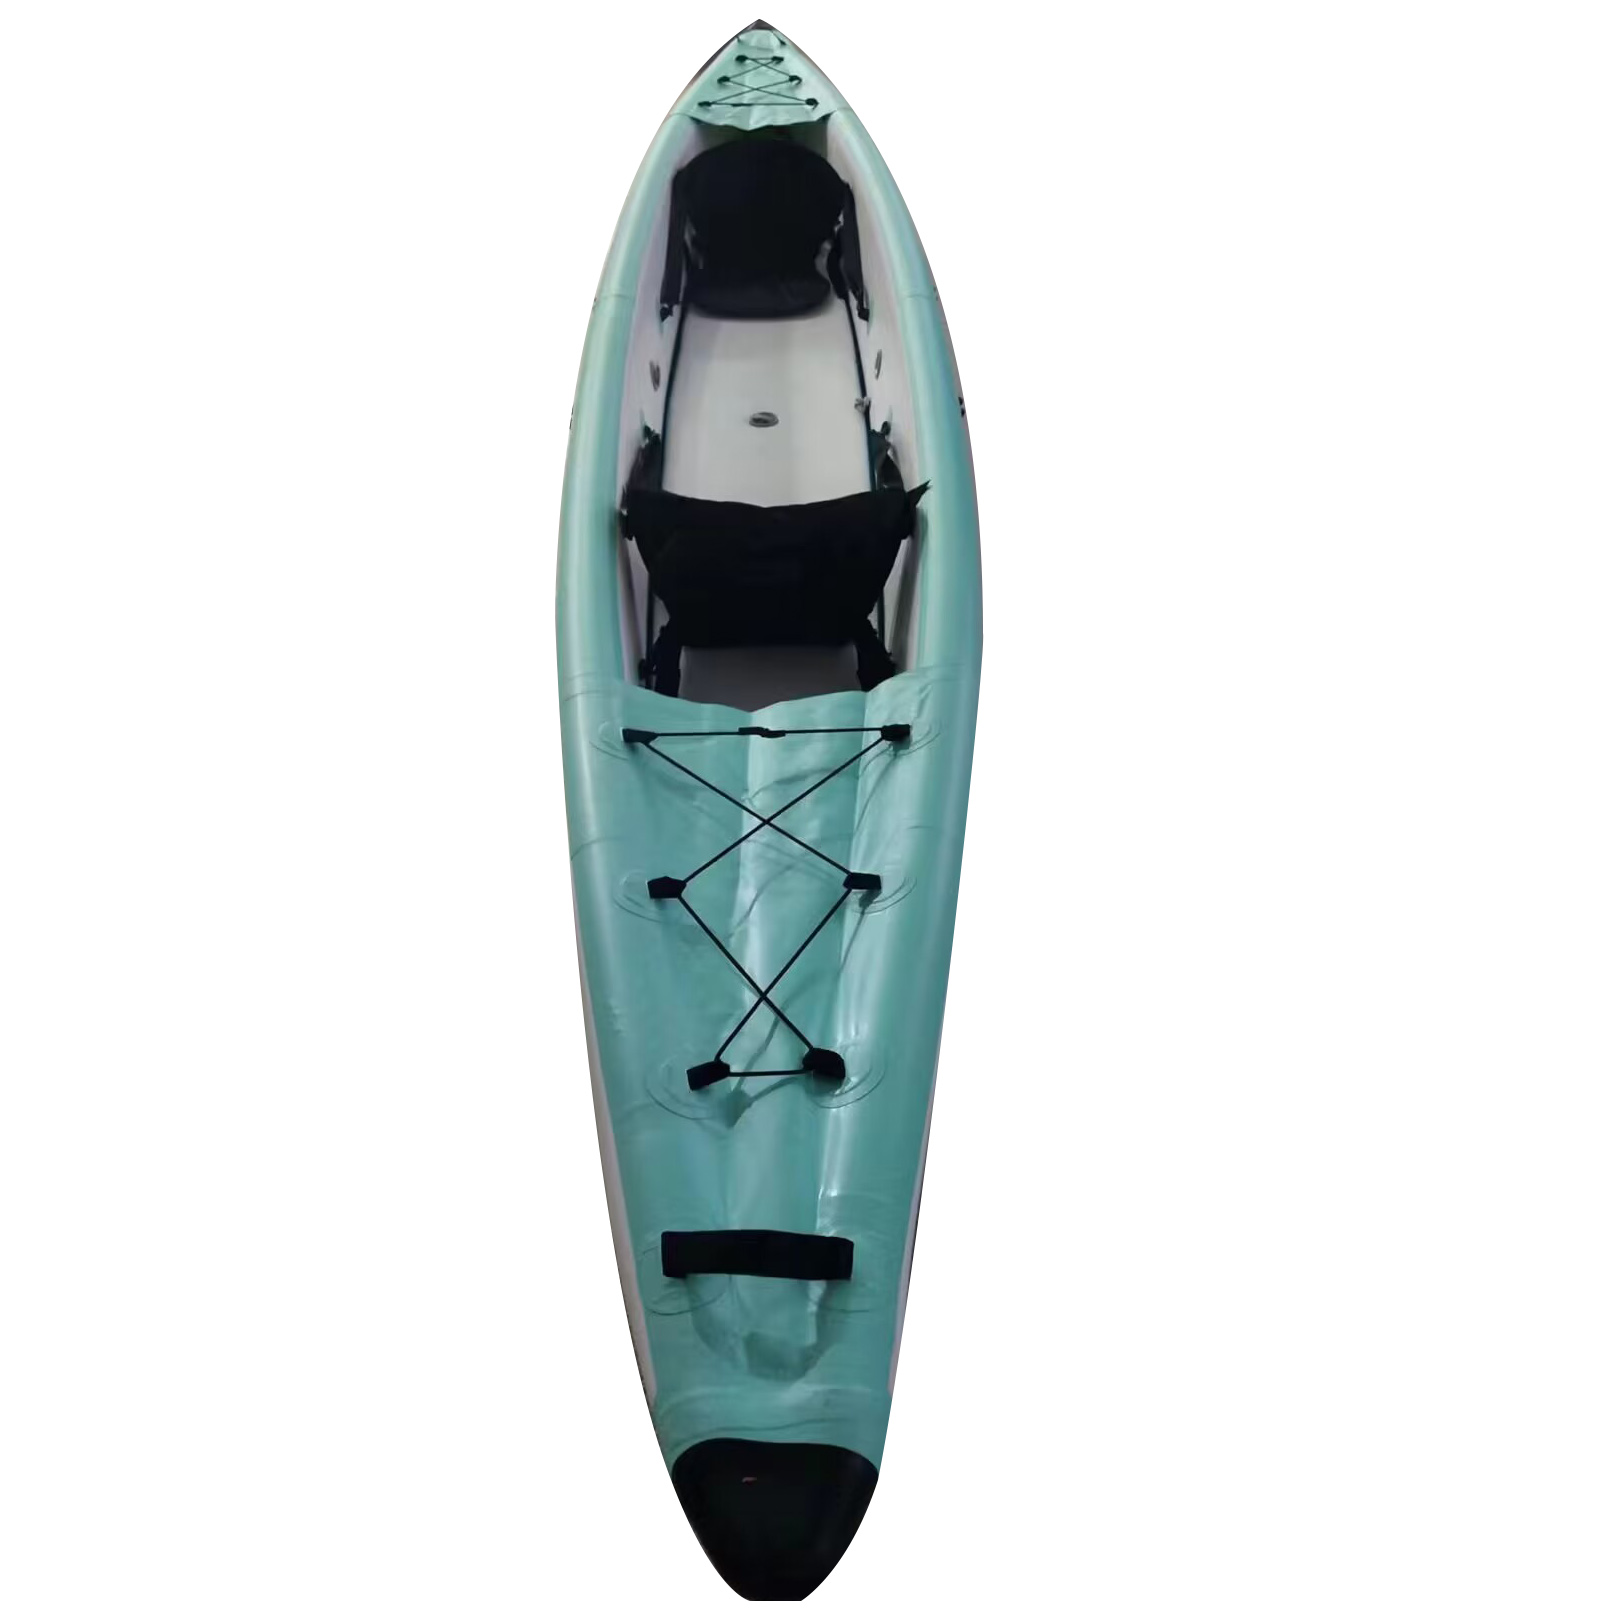 480x53x35cm tavola da surf gonfiabile Dropstitch biposto Kayak da pesca barca canoa pvc gommone zattera pompa a pale sedile manometro punto goccia materiale